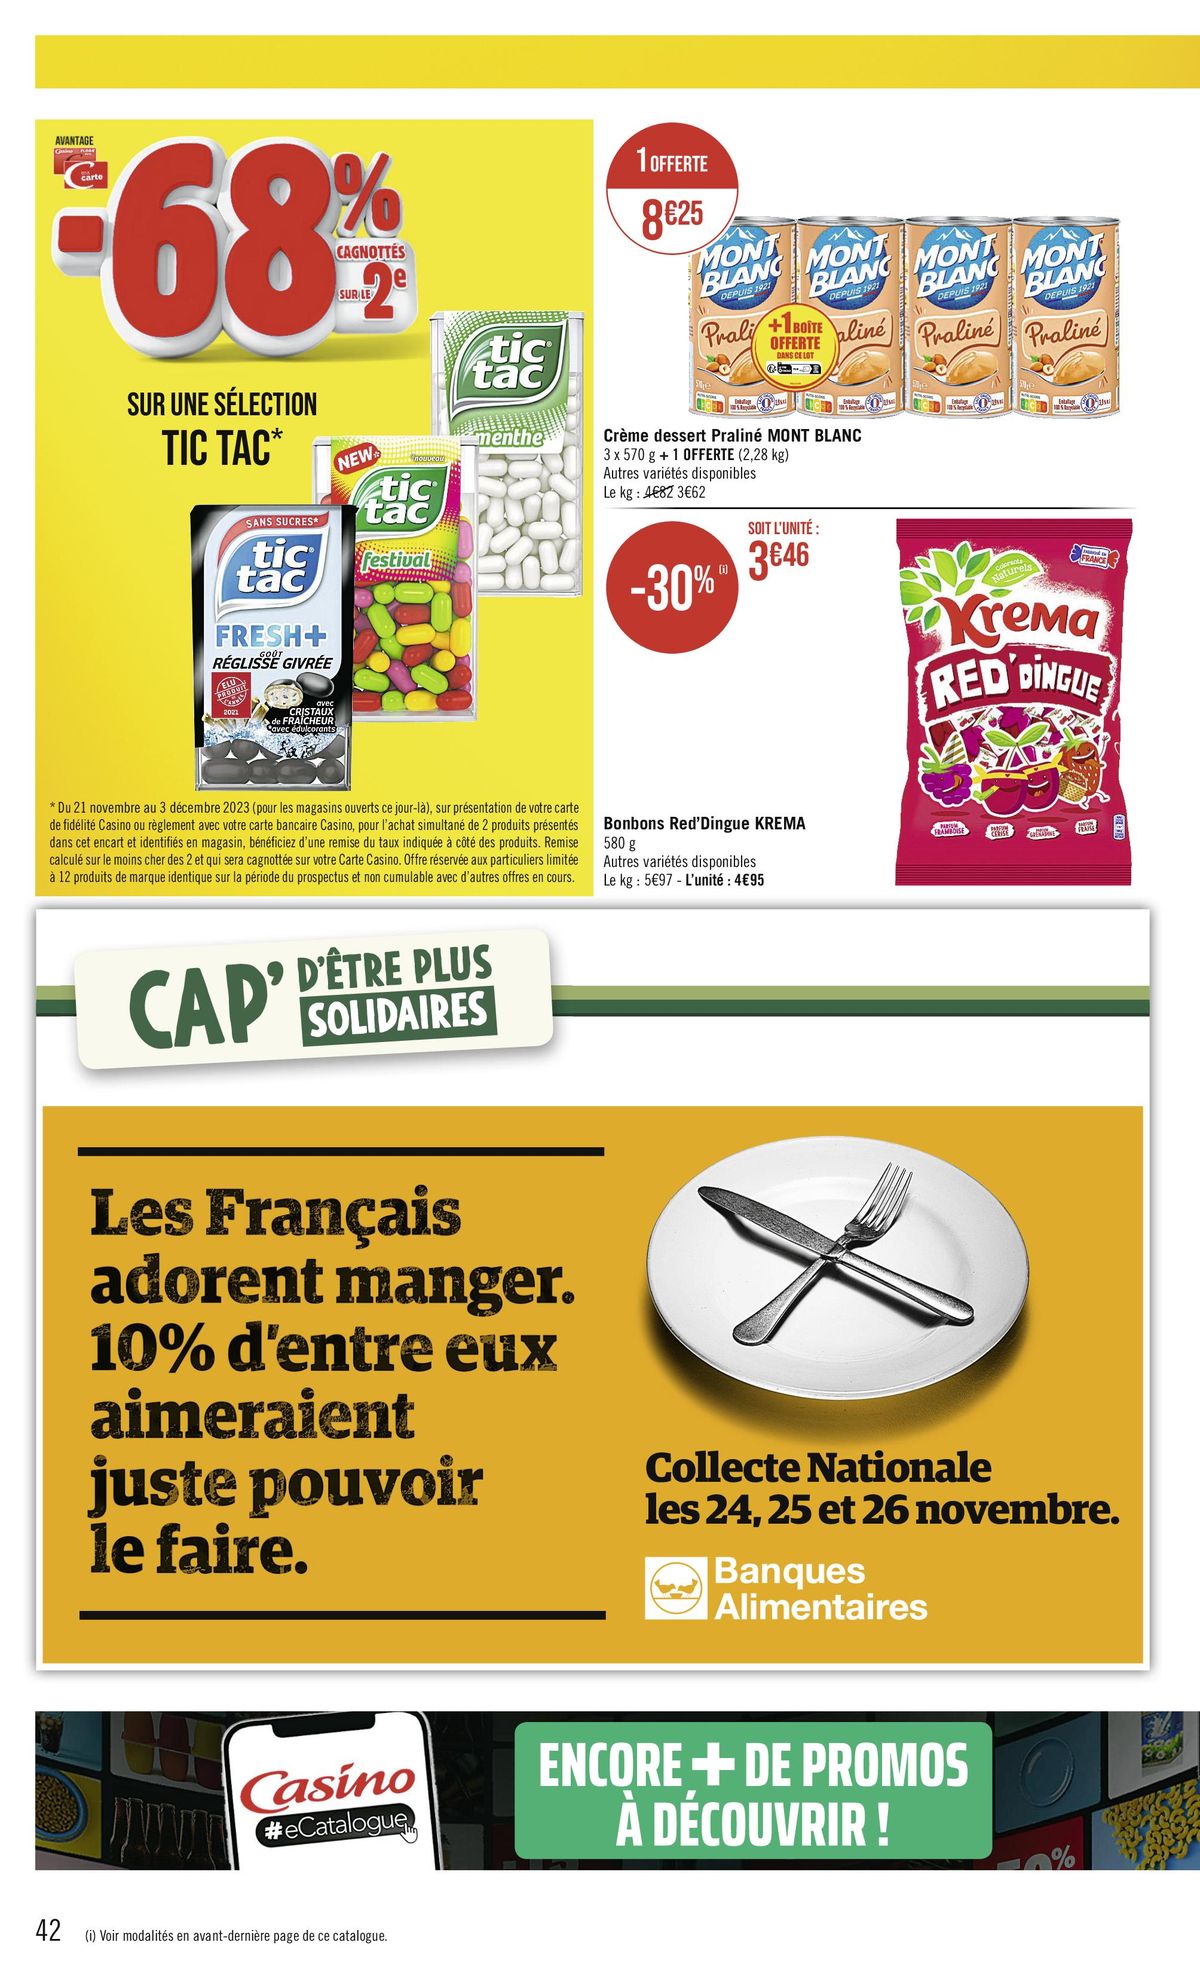 Catalogue -68 % CAGNOTTÉS SUR LE 2€, page 00042